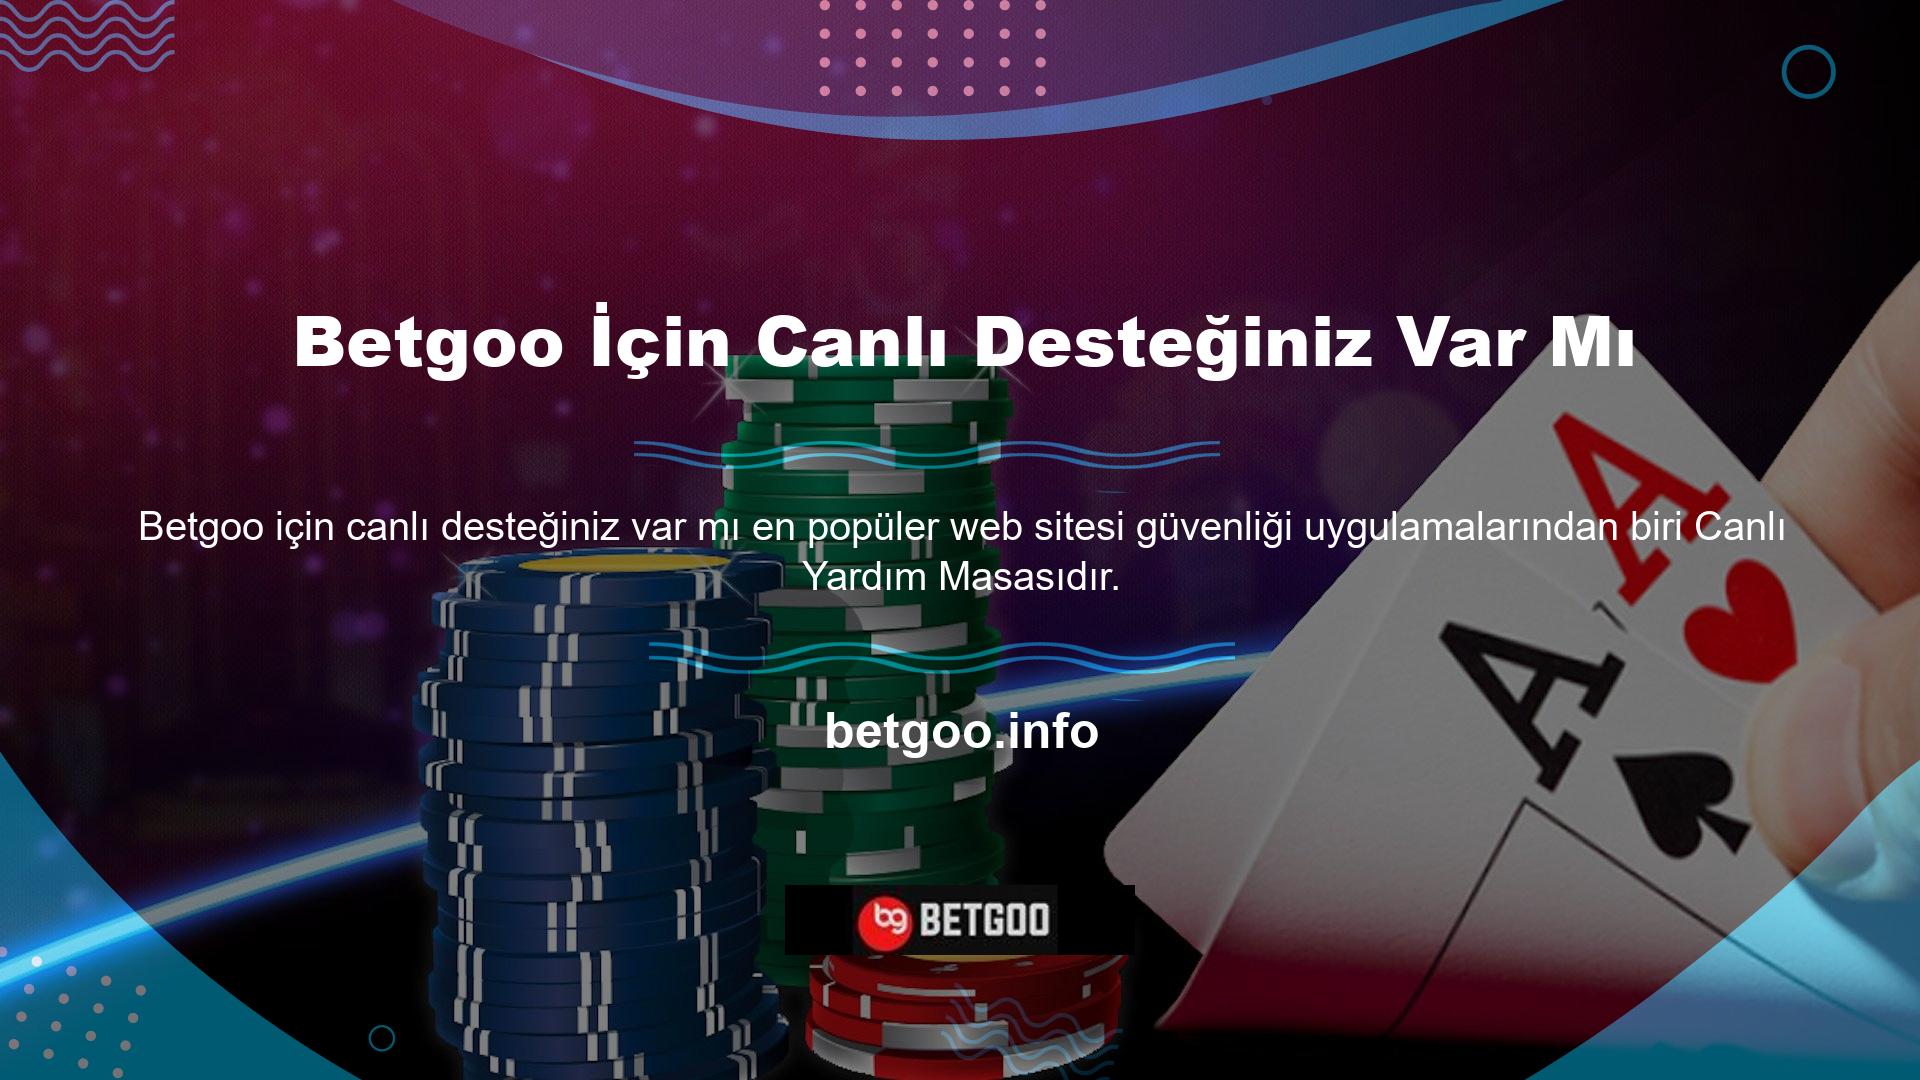 Online casino siteleri kullanıcılarına iki farklı üyelik seçeneği sunuyor: premium üyelik ve tam üyelik